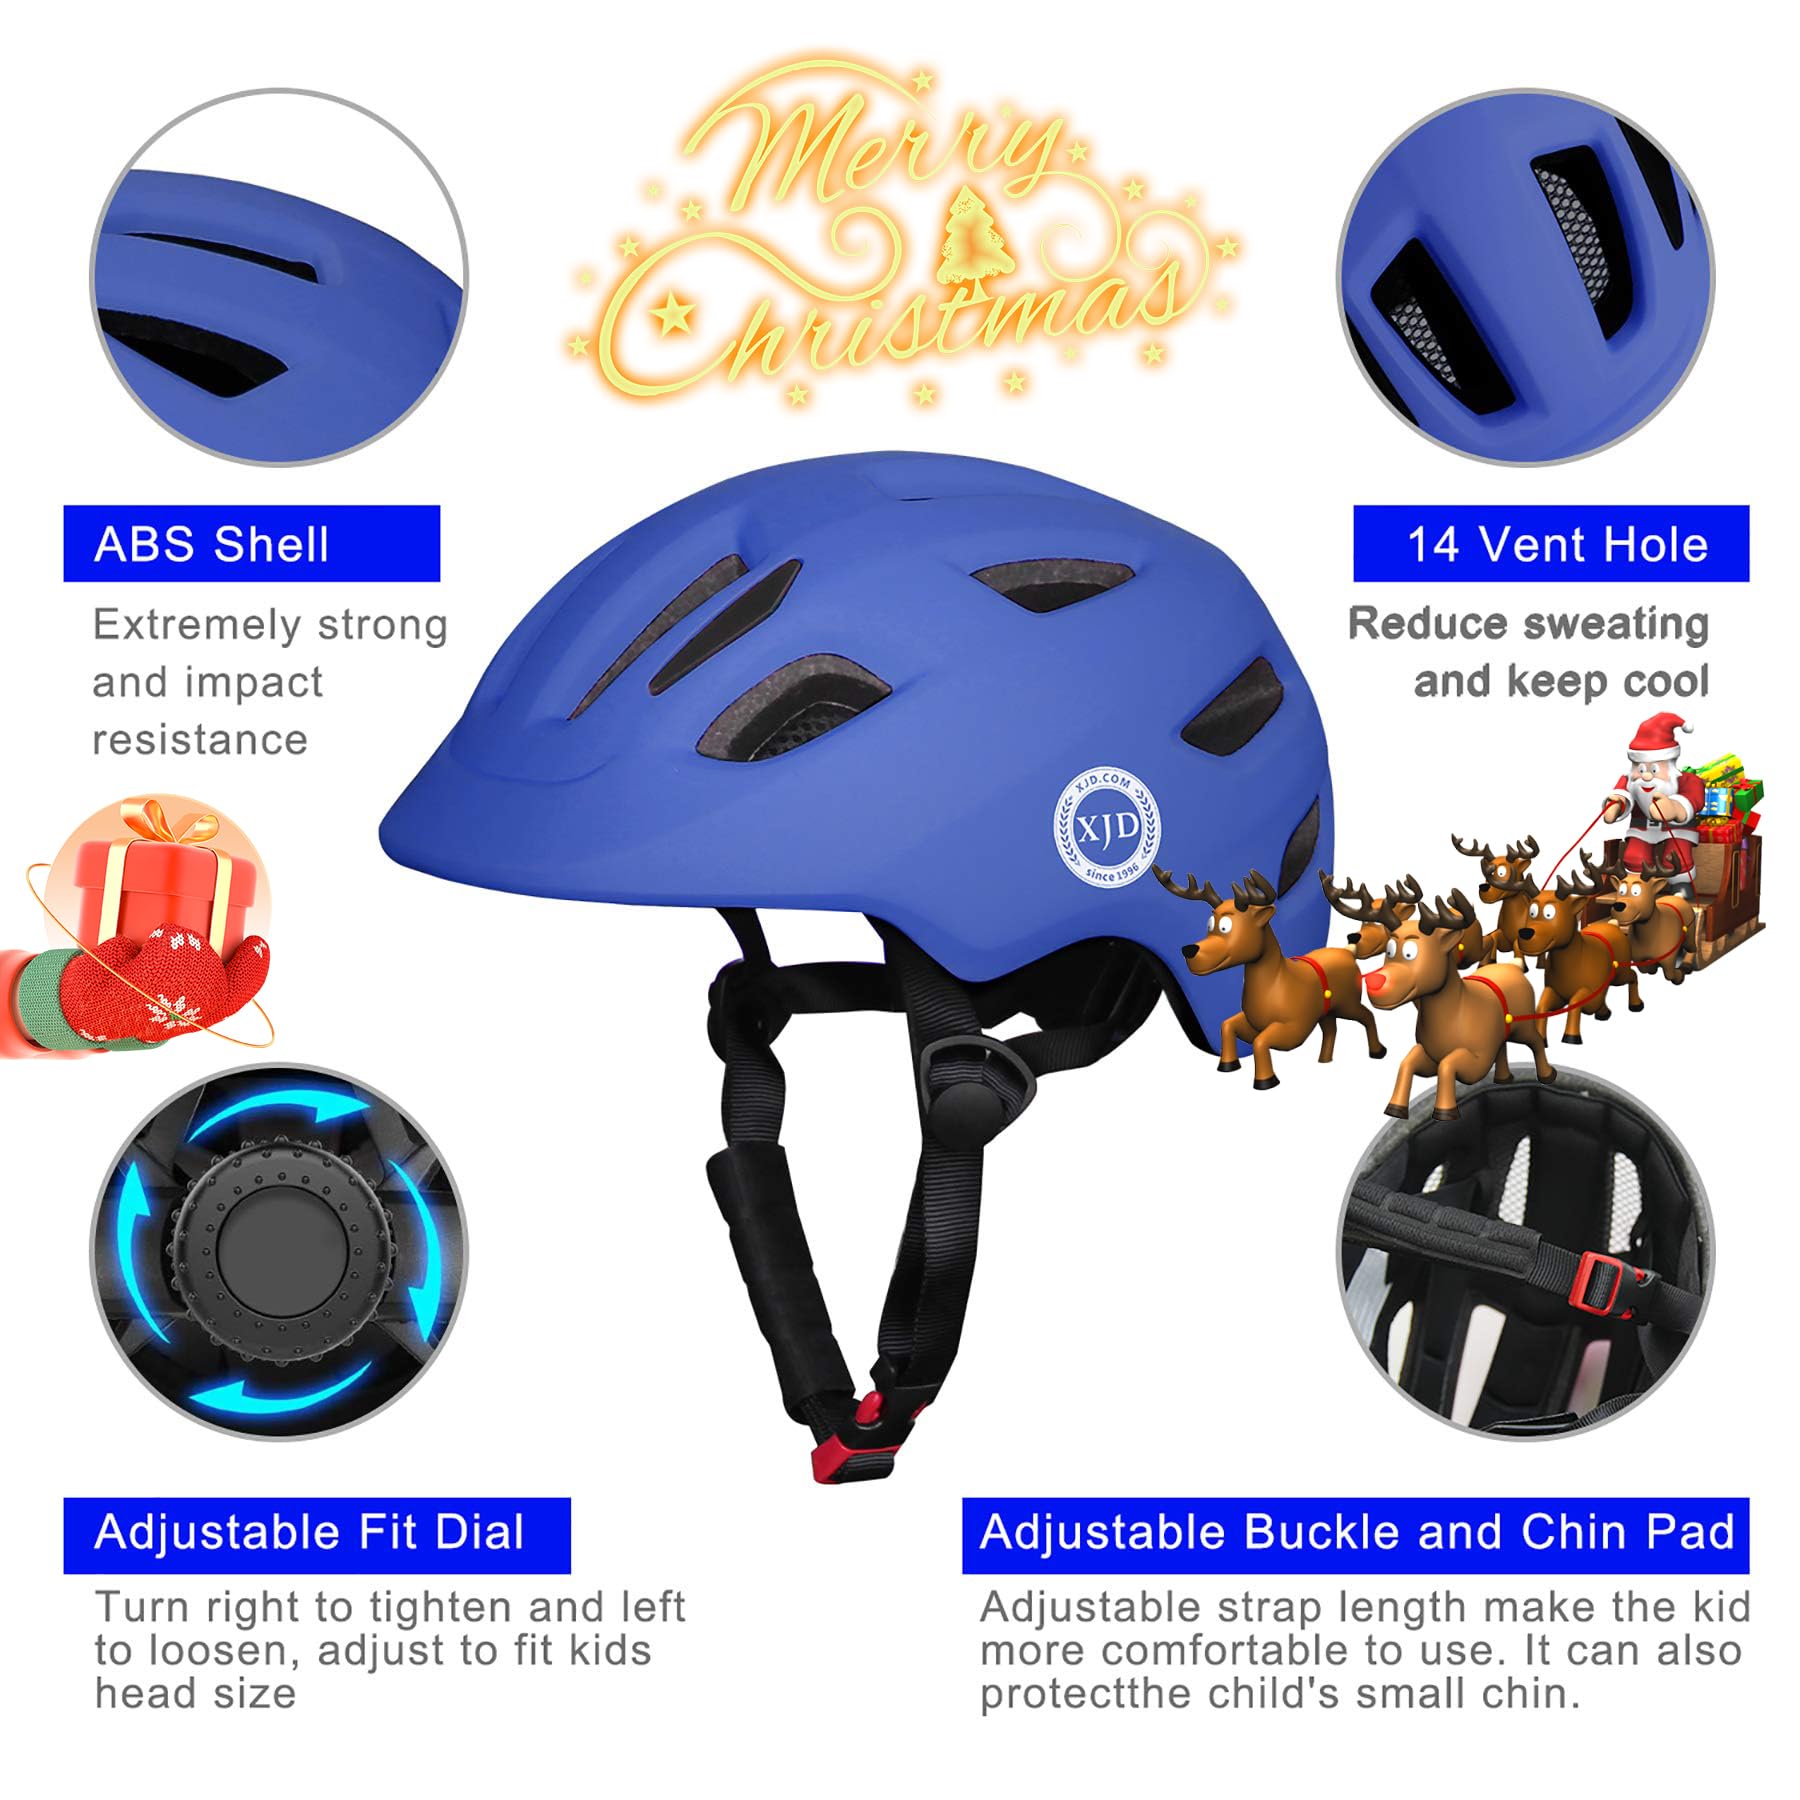 XJD Toddler Helmet Kids Bike Helmet Baby Multi-Sport Adjustable Skateboard Helmet for Kids Boys Girls Infant Helmet Safety Cycli